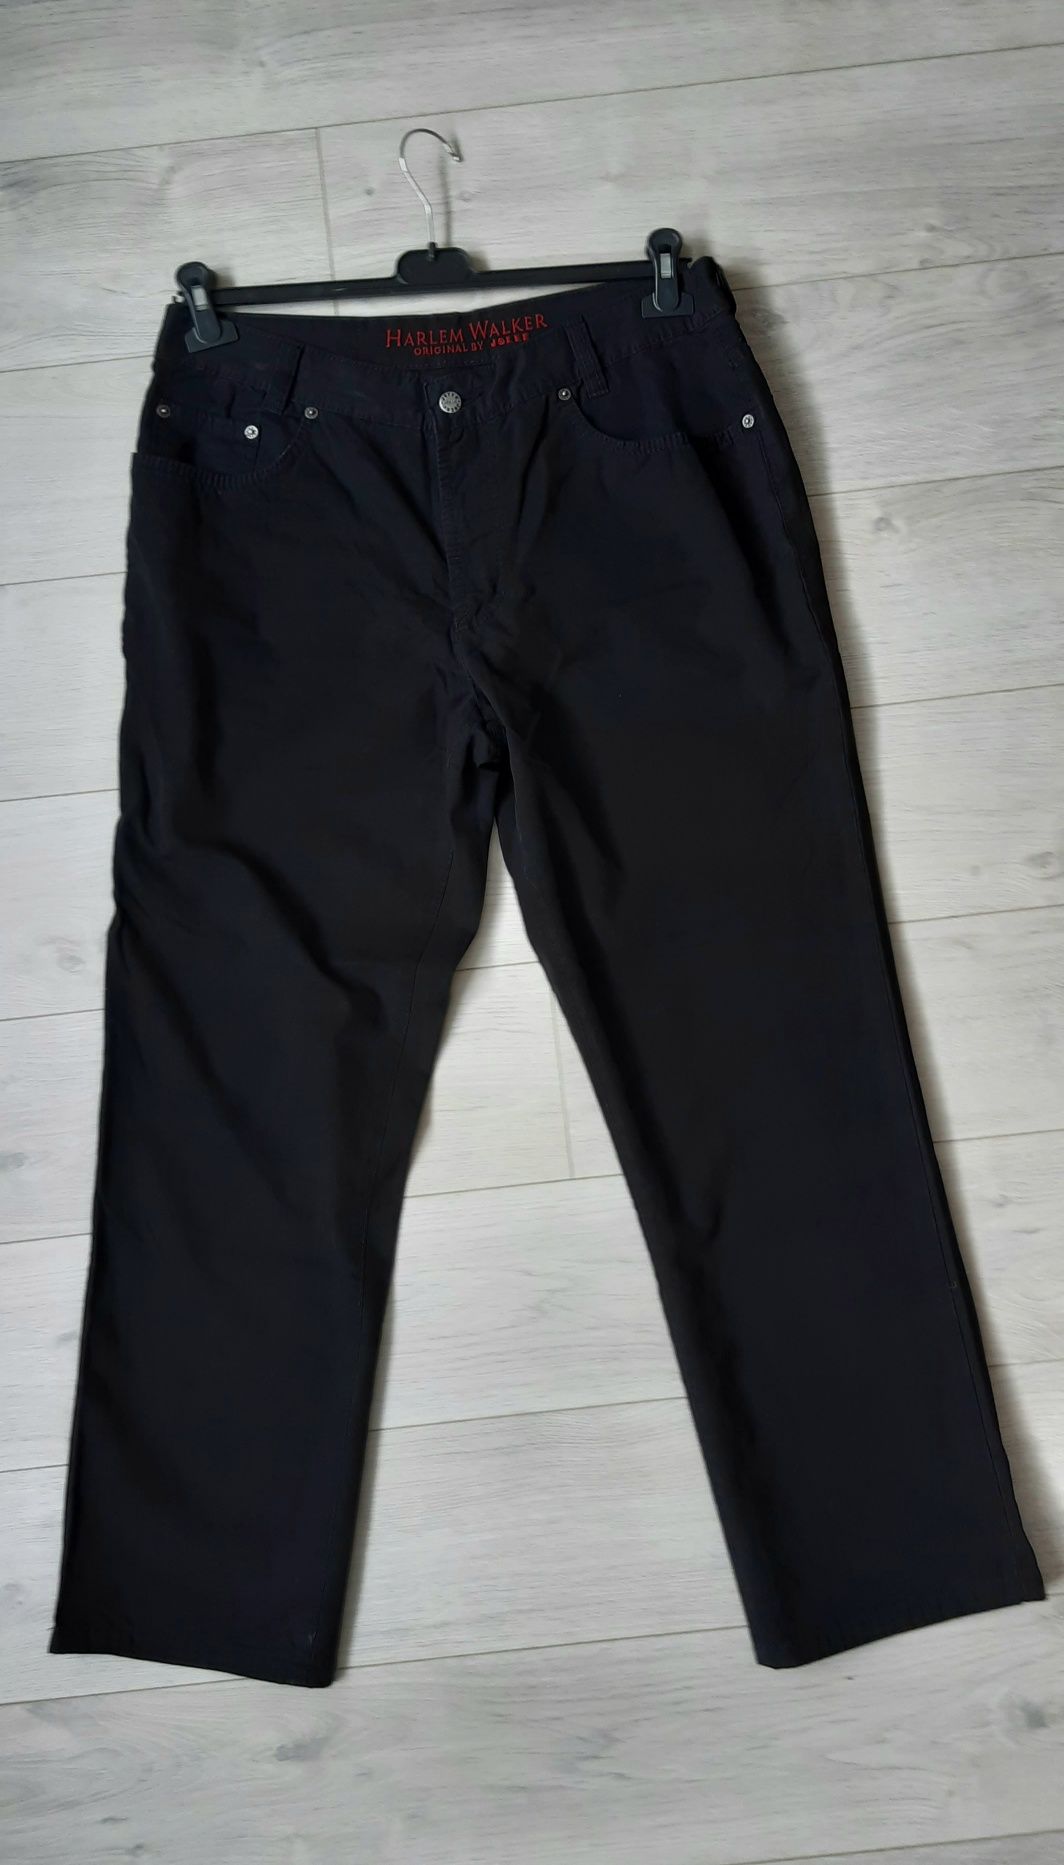 Joker Harlem Walker klasyczne spodnie męskie czarne 100% bawełna